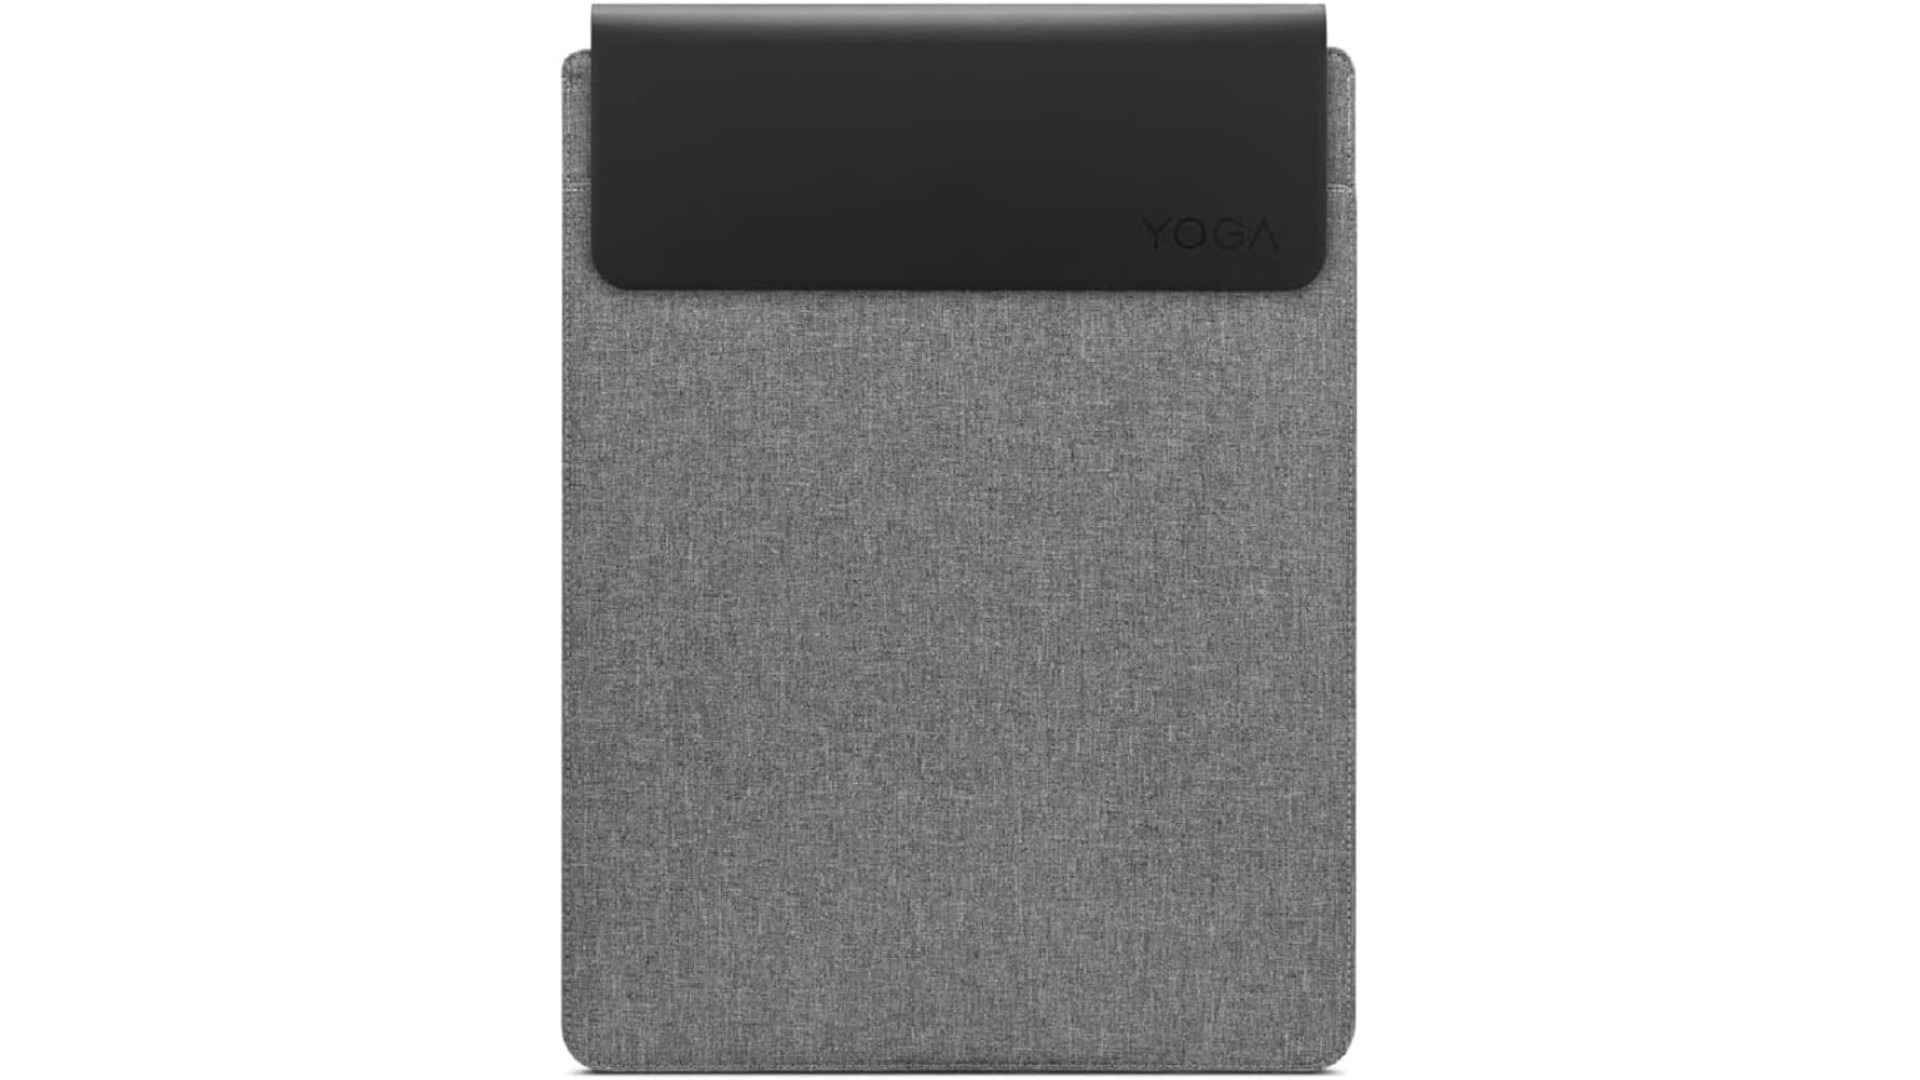 ნოუთბუქის ჩანთა Lenovo  Yoga Laptop Sleeve 14 Inch Notebook/Tablet Compatible with MacBook Air/Pro - Slim Eco-Friendly Lightweight Case with Accessory Pocket & Magneti